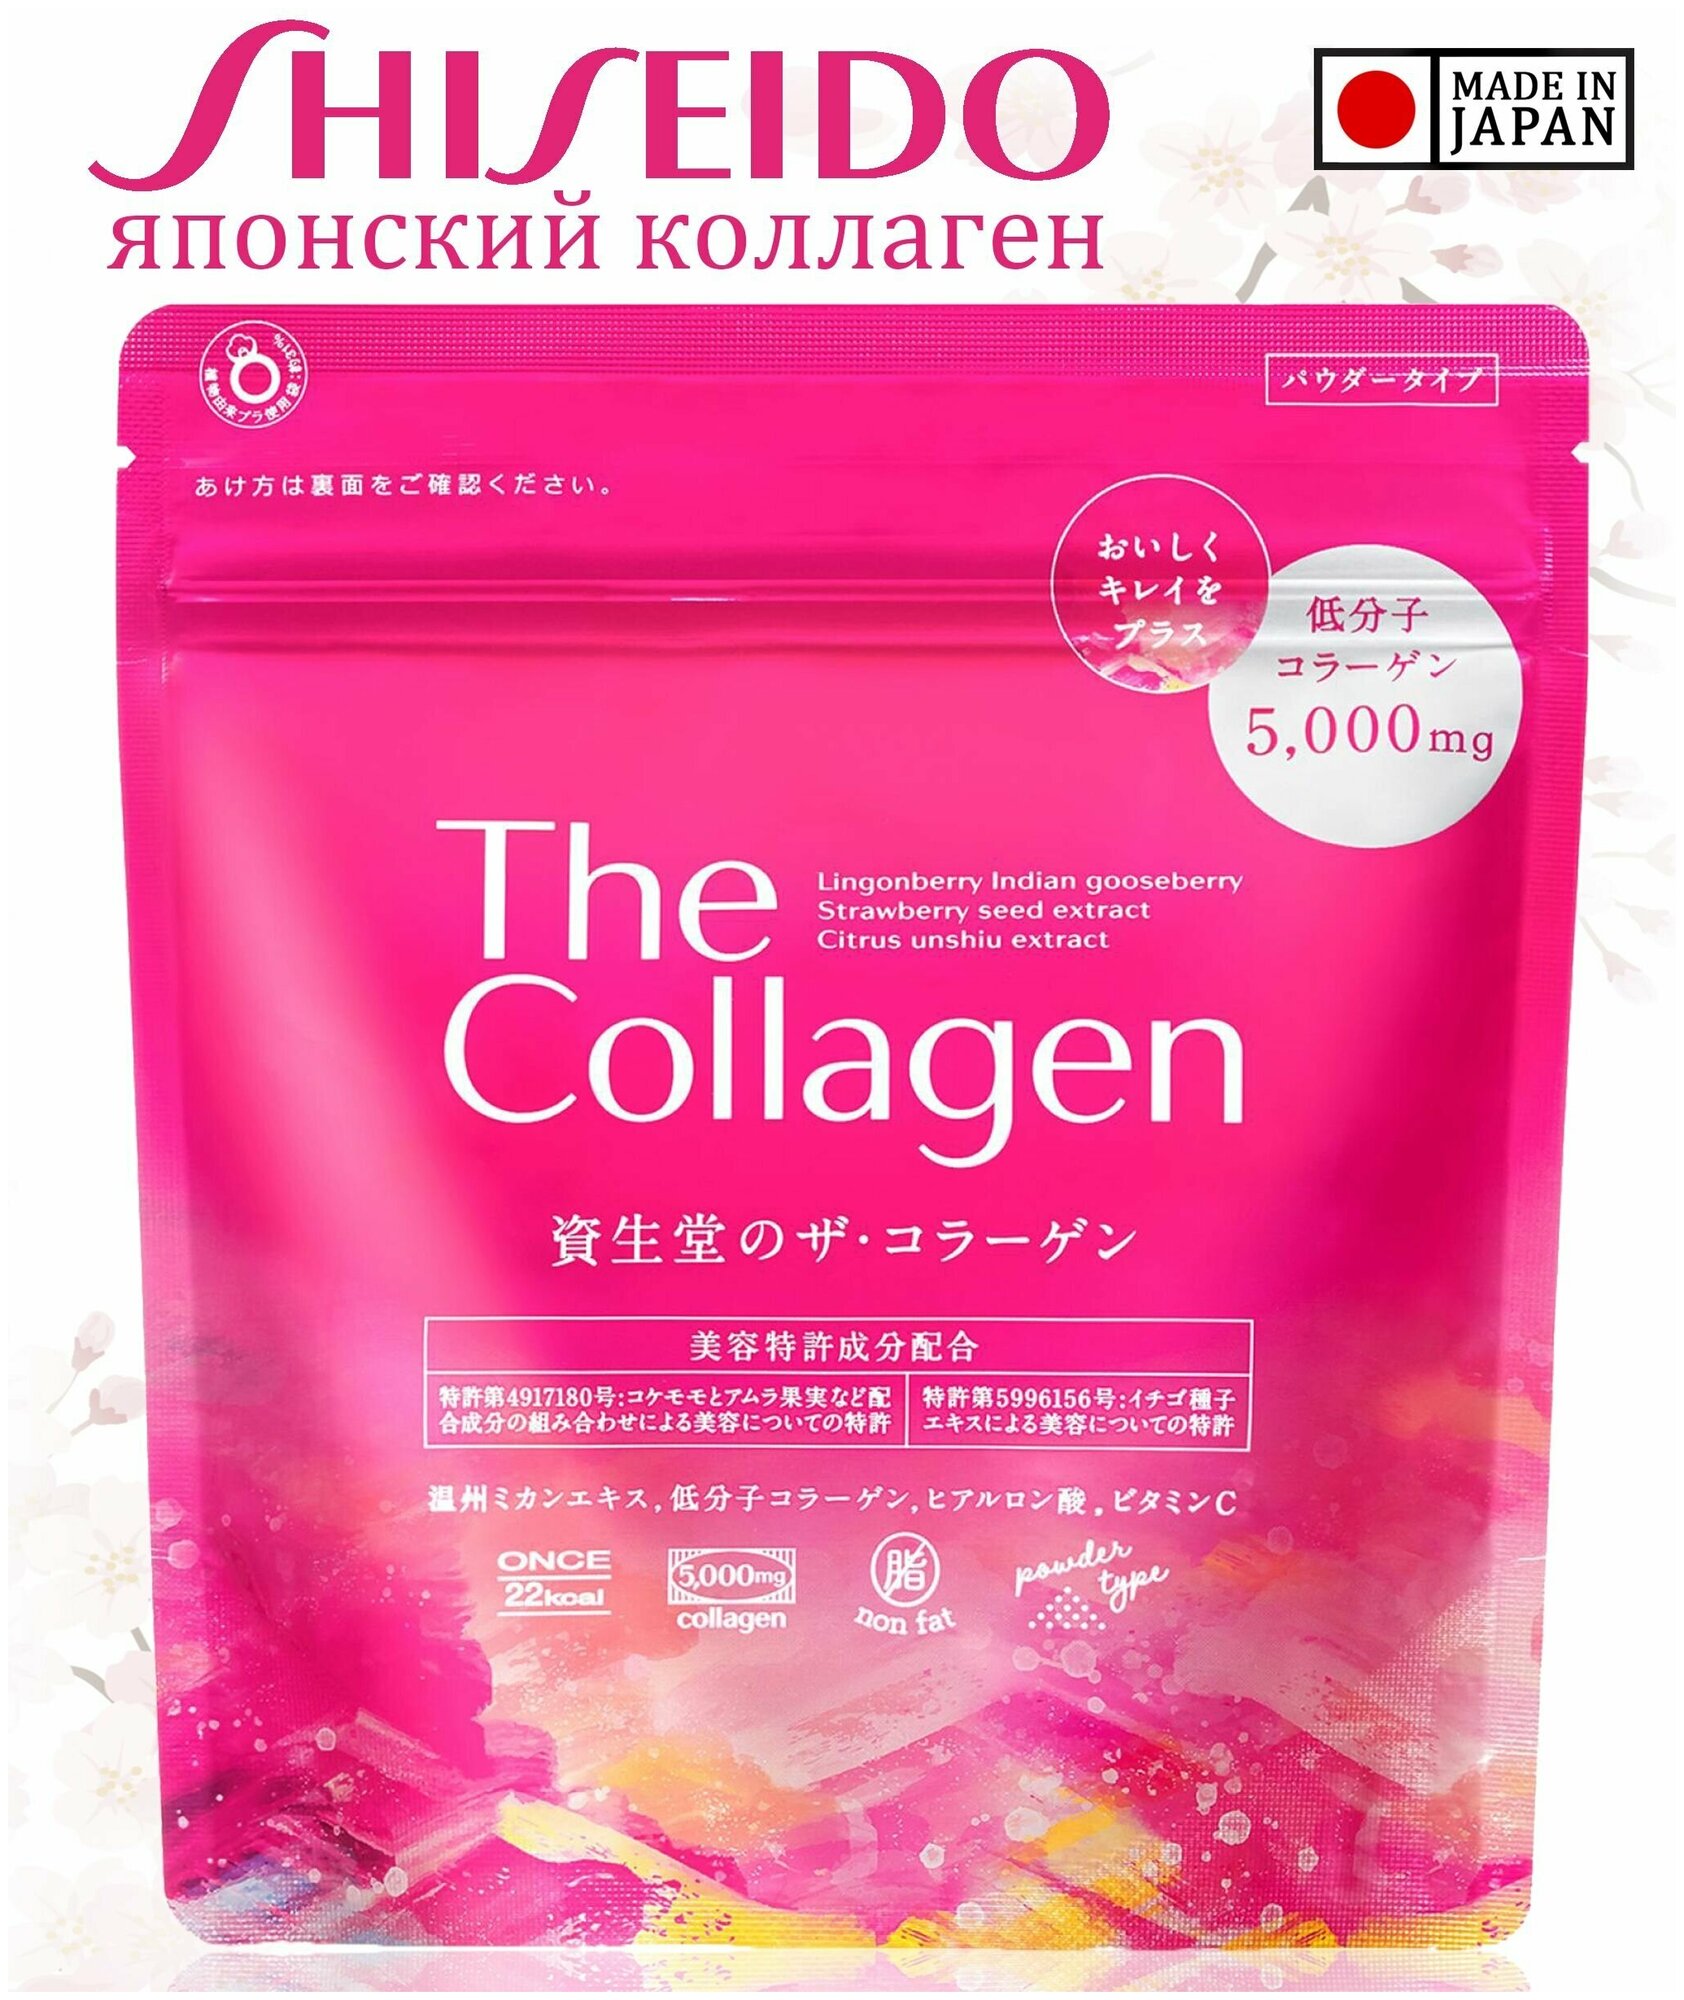 Коллаген японский The Collagen SHISEIDO / Порошок с гиалуроновой кислотой/ Курс на 21 день приема/ Для кожи и суставов / Япония